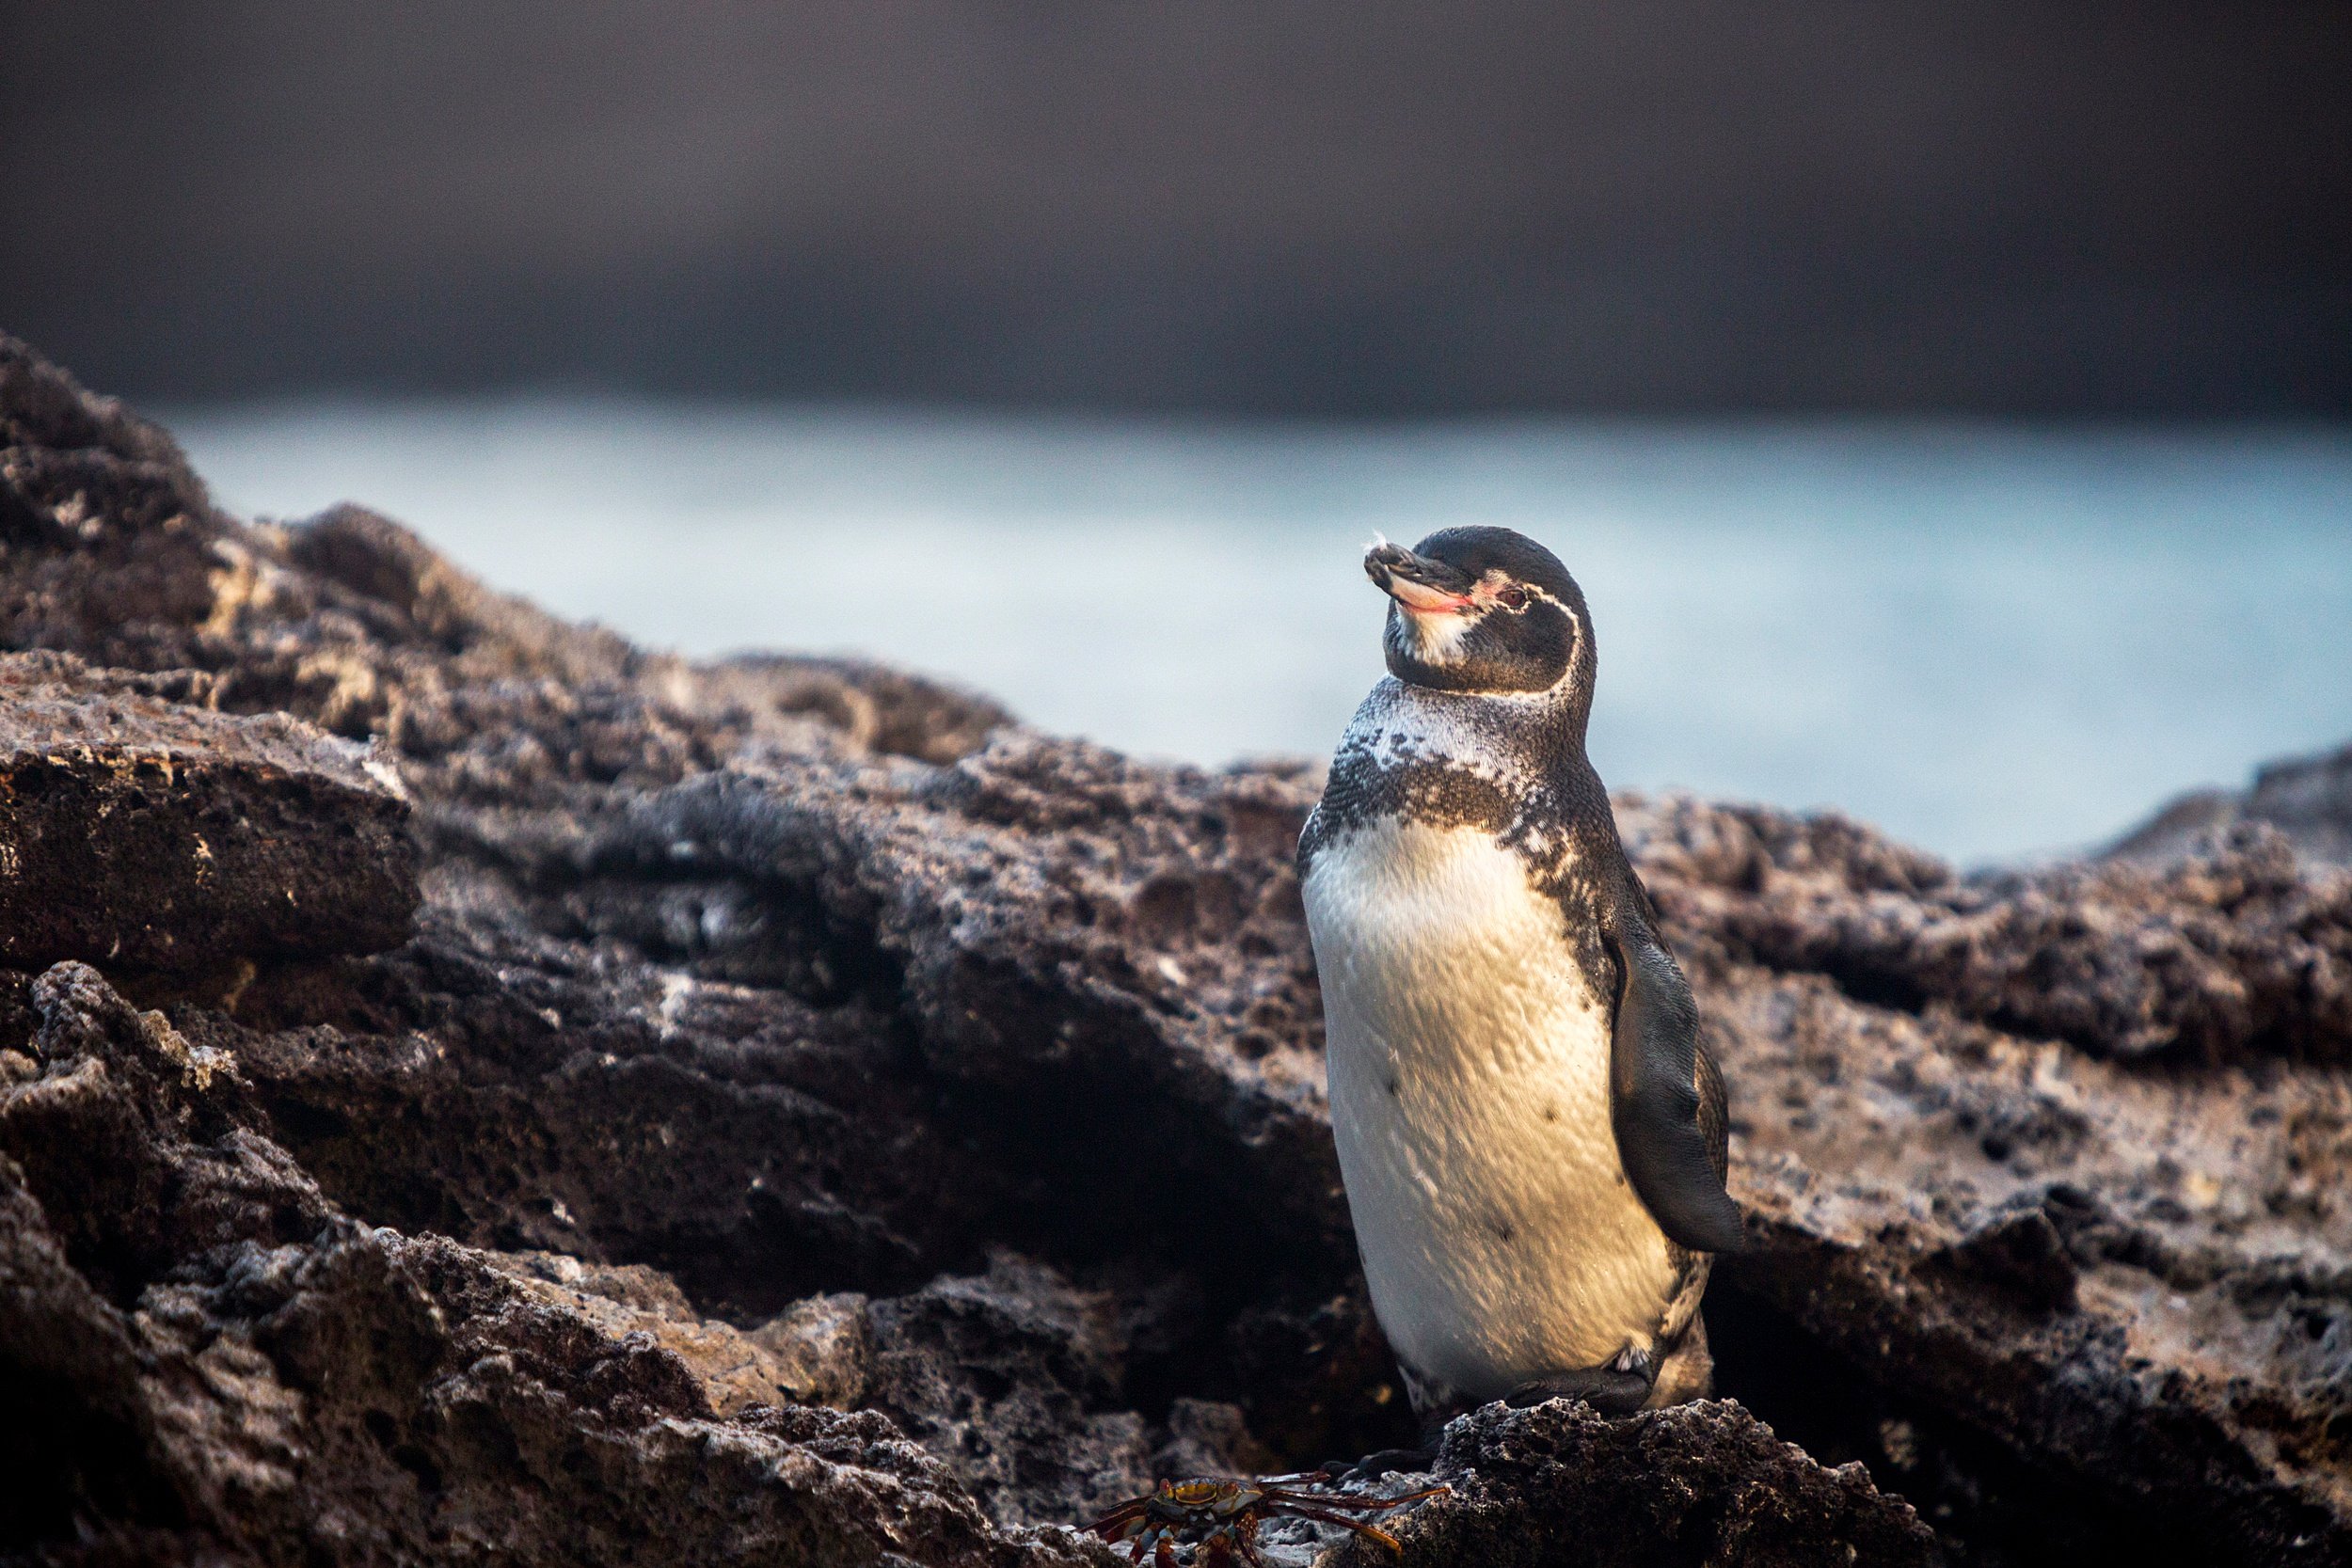 Galapagos Penguin at Bartolome-10.jpg